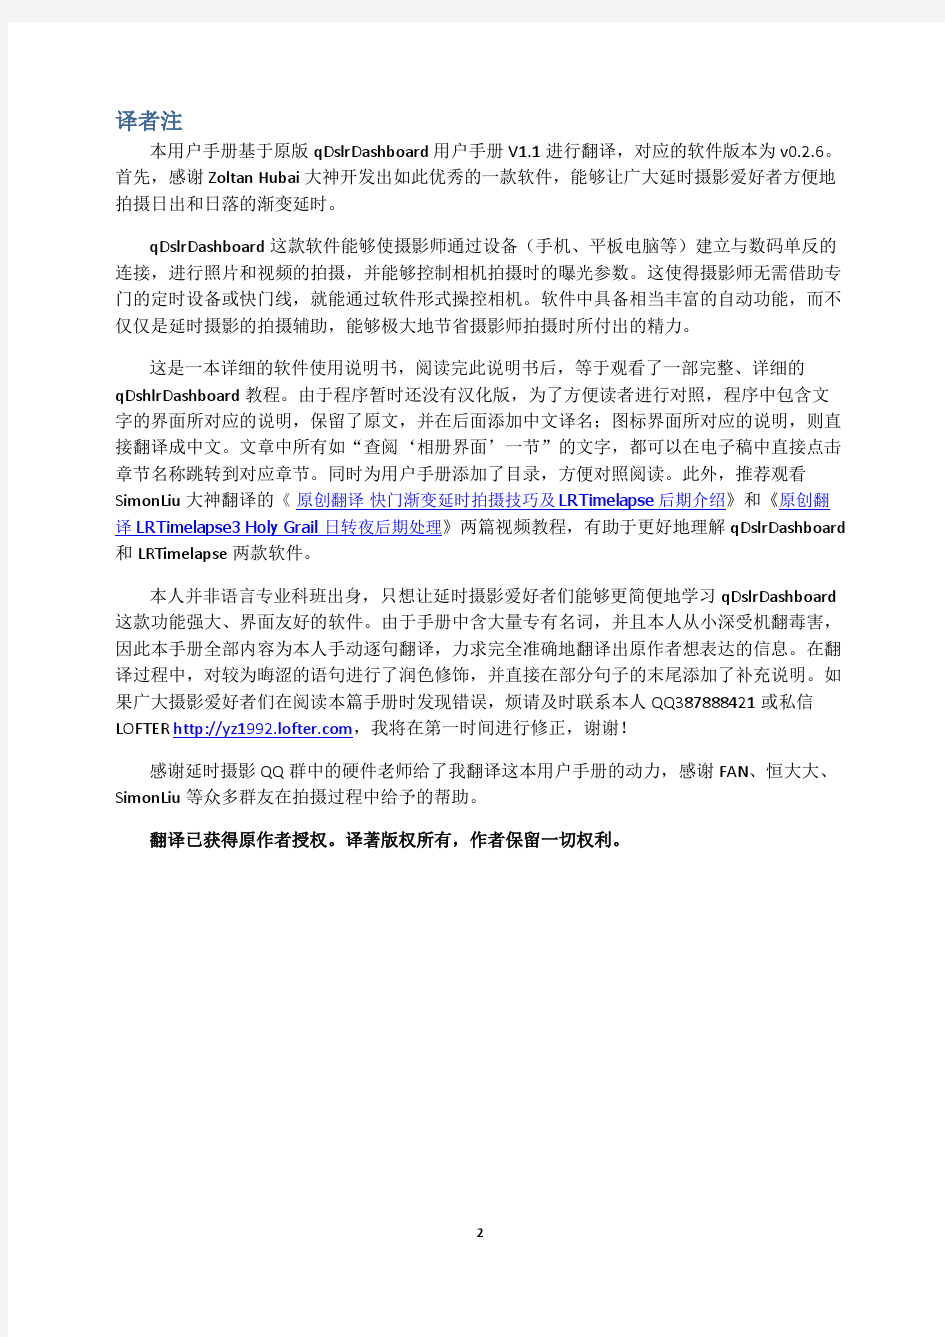 qDslrDashboard_manual_V1.1中文版